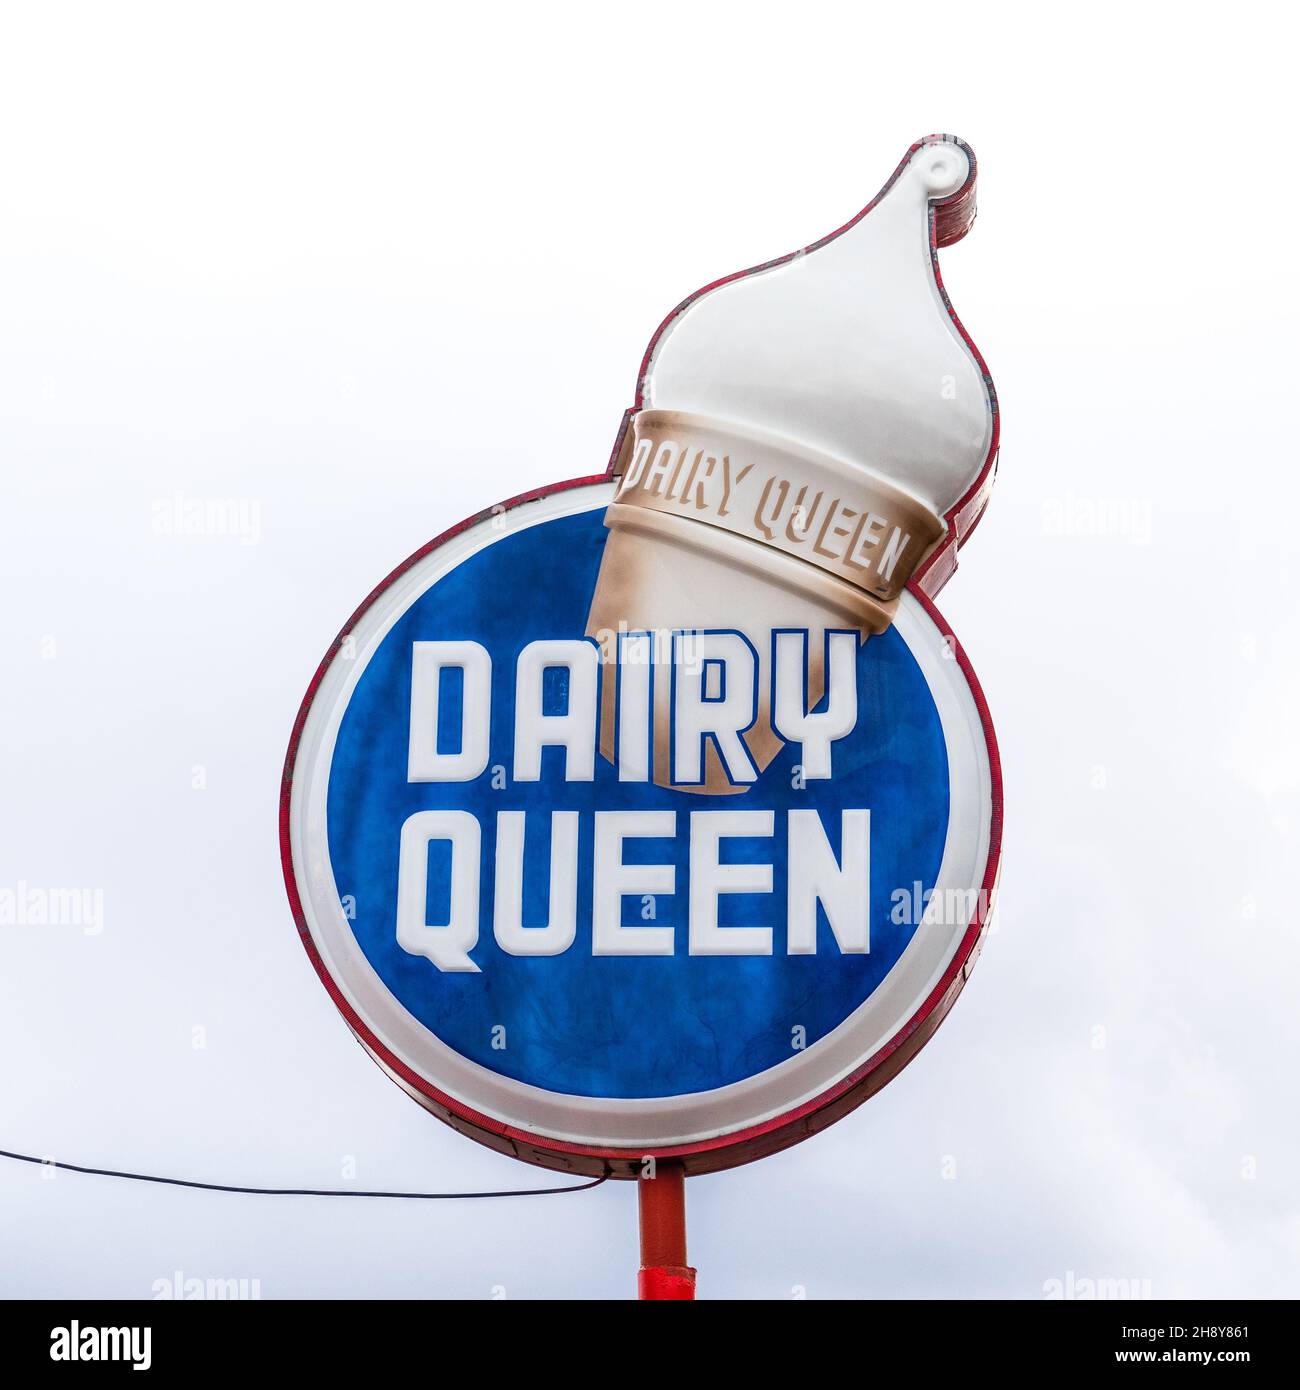 Williams, AZ - 29 septembre 2021 : ce panneau Dairy Queen d'époque à cornet de glace sur la route historique 66 provient de l'emplacement original de 1950s et a été déplacé Banque D'Images